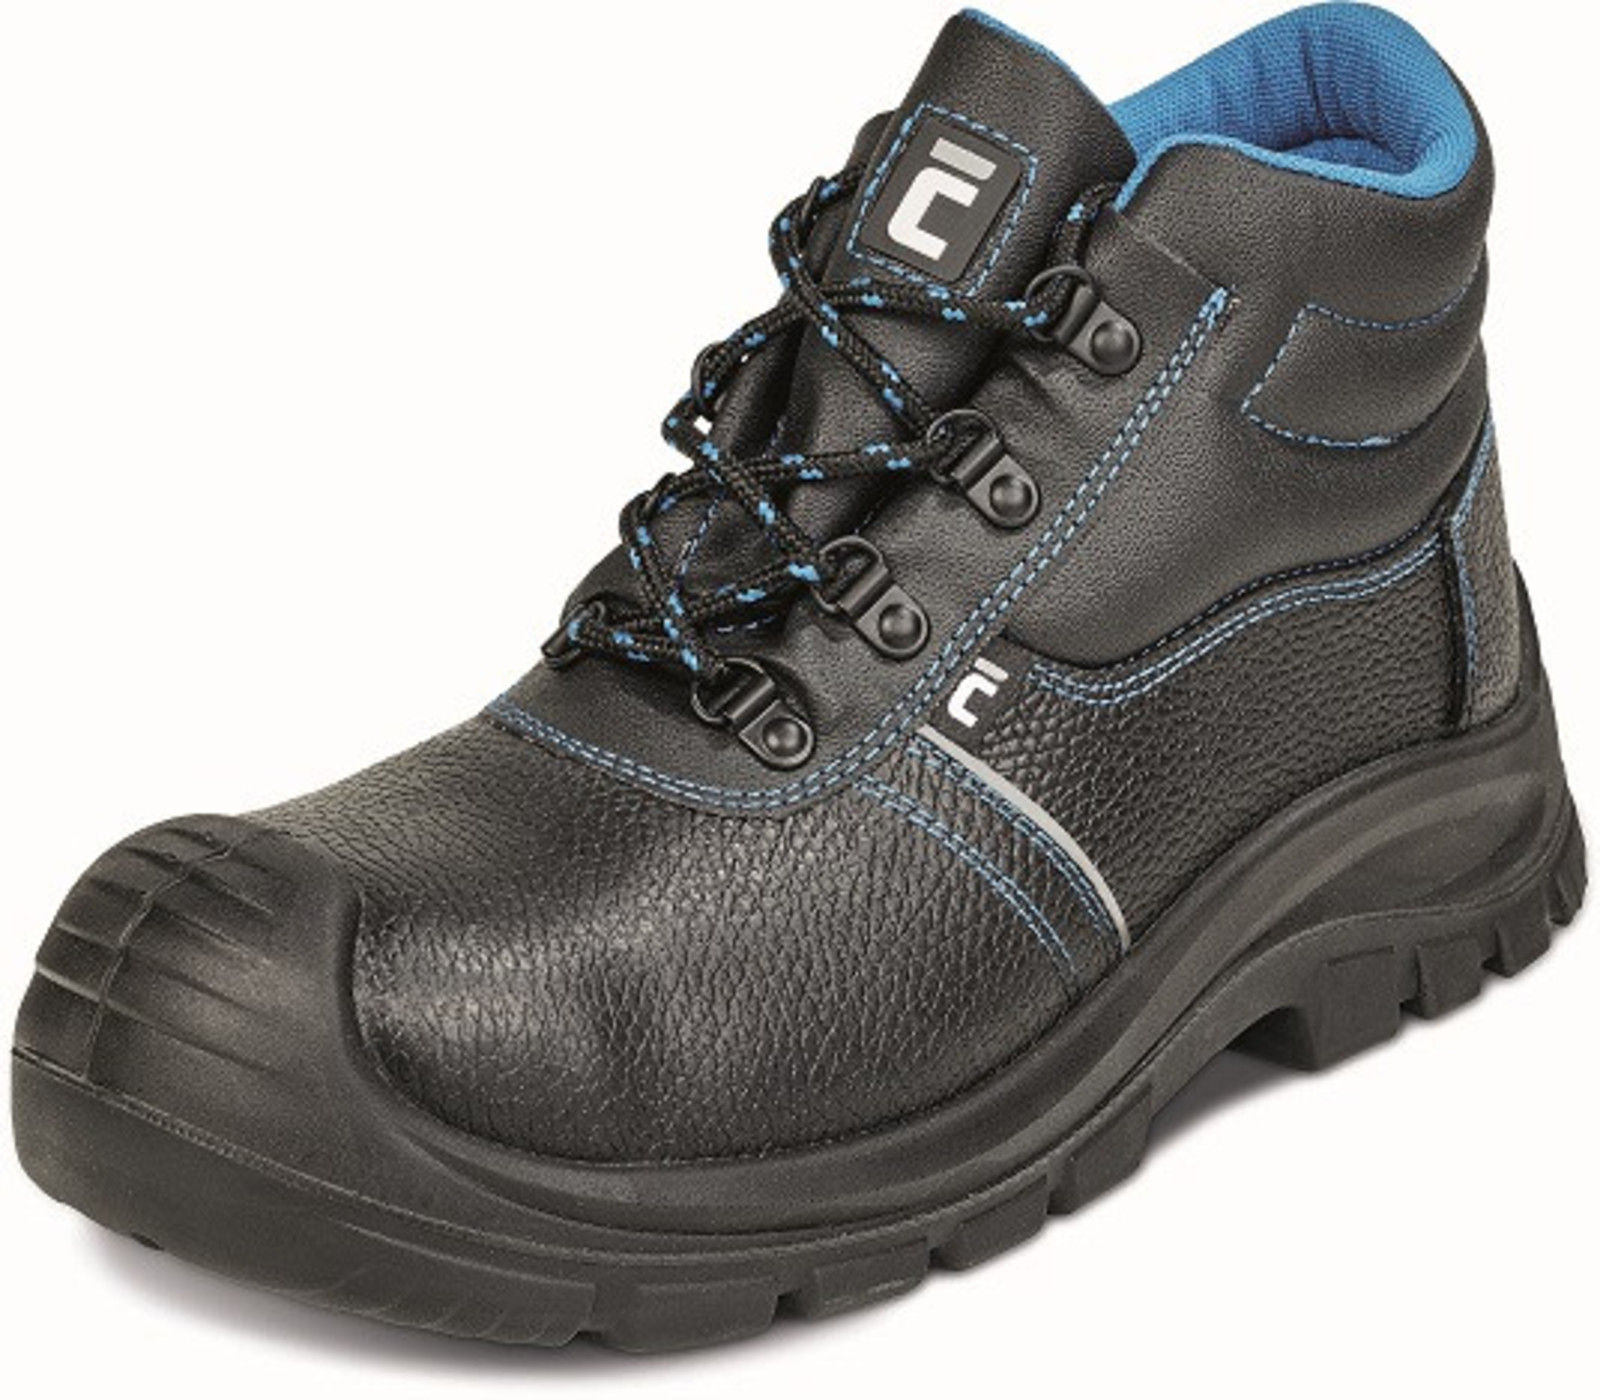 Bezpečnostná obuv Raven XT S1P - veľkosť: 45, farba: čierna